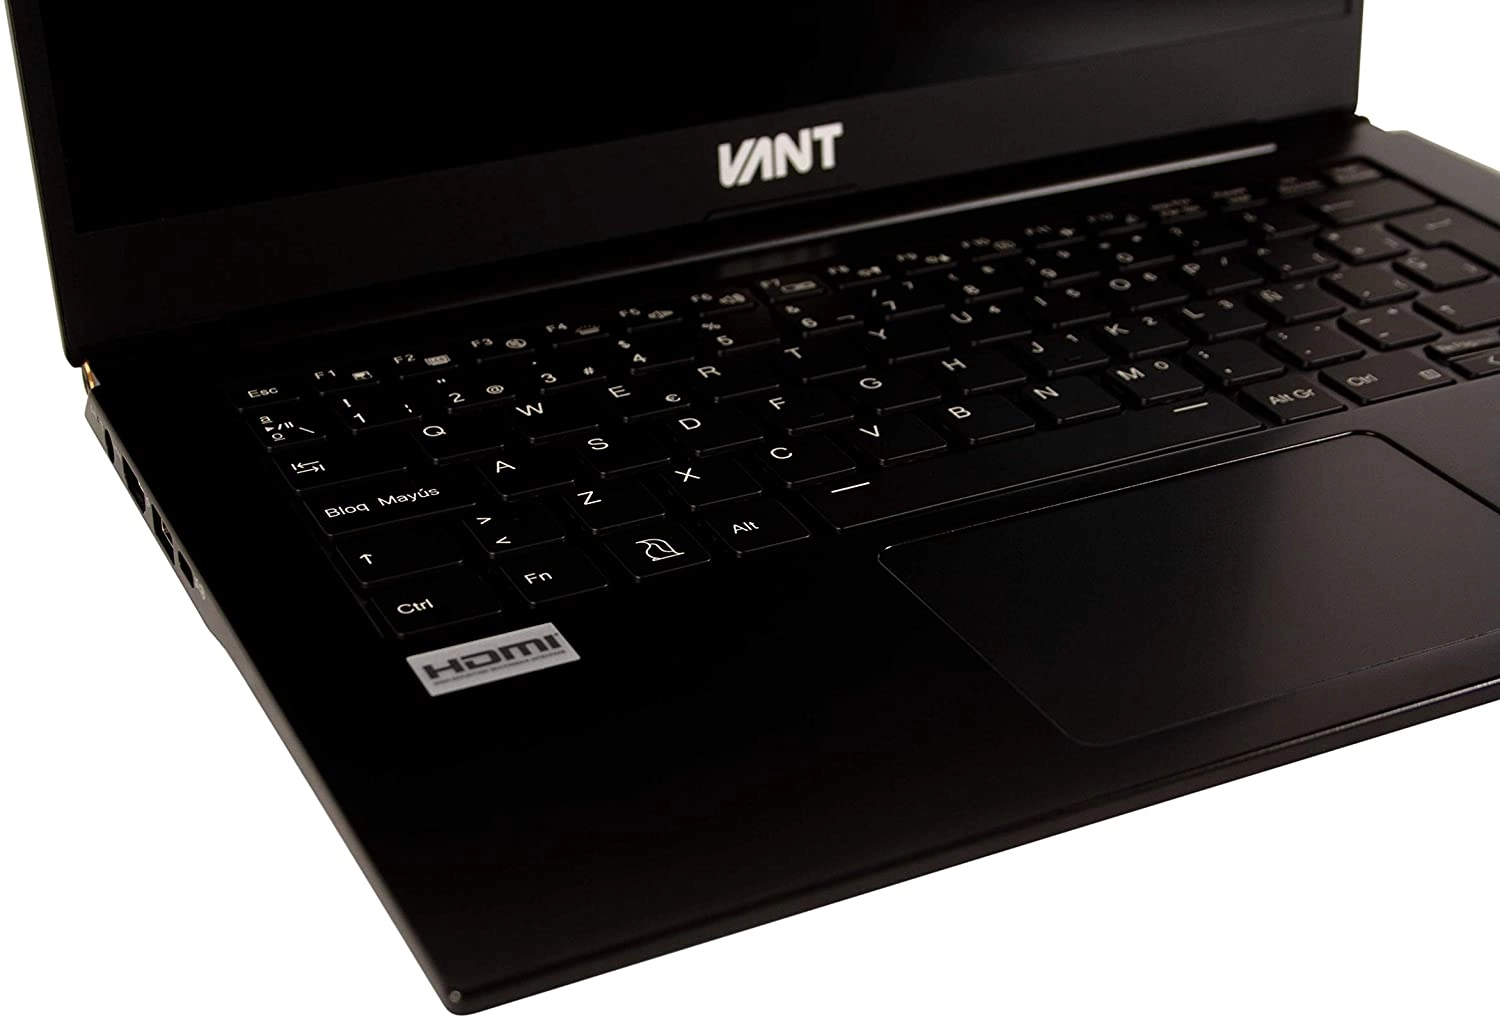 VANT Edge laptop image